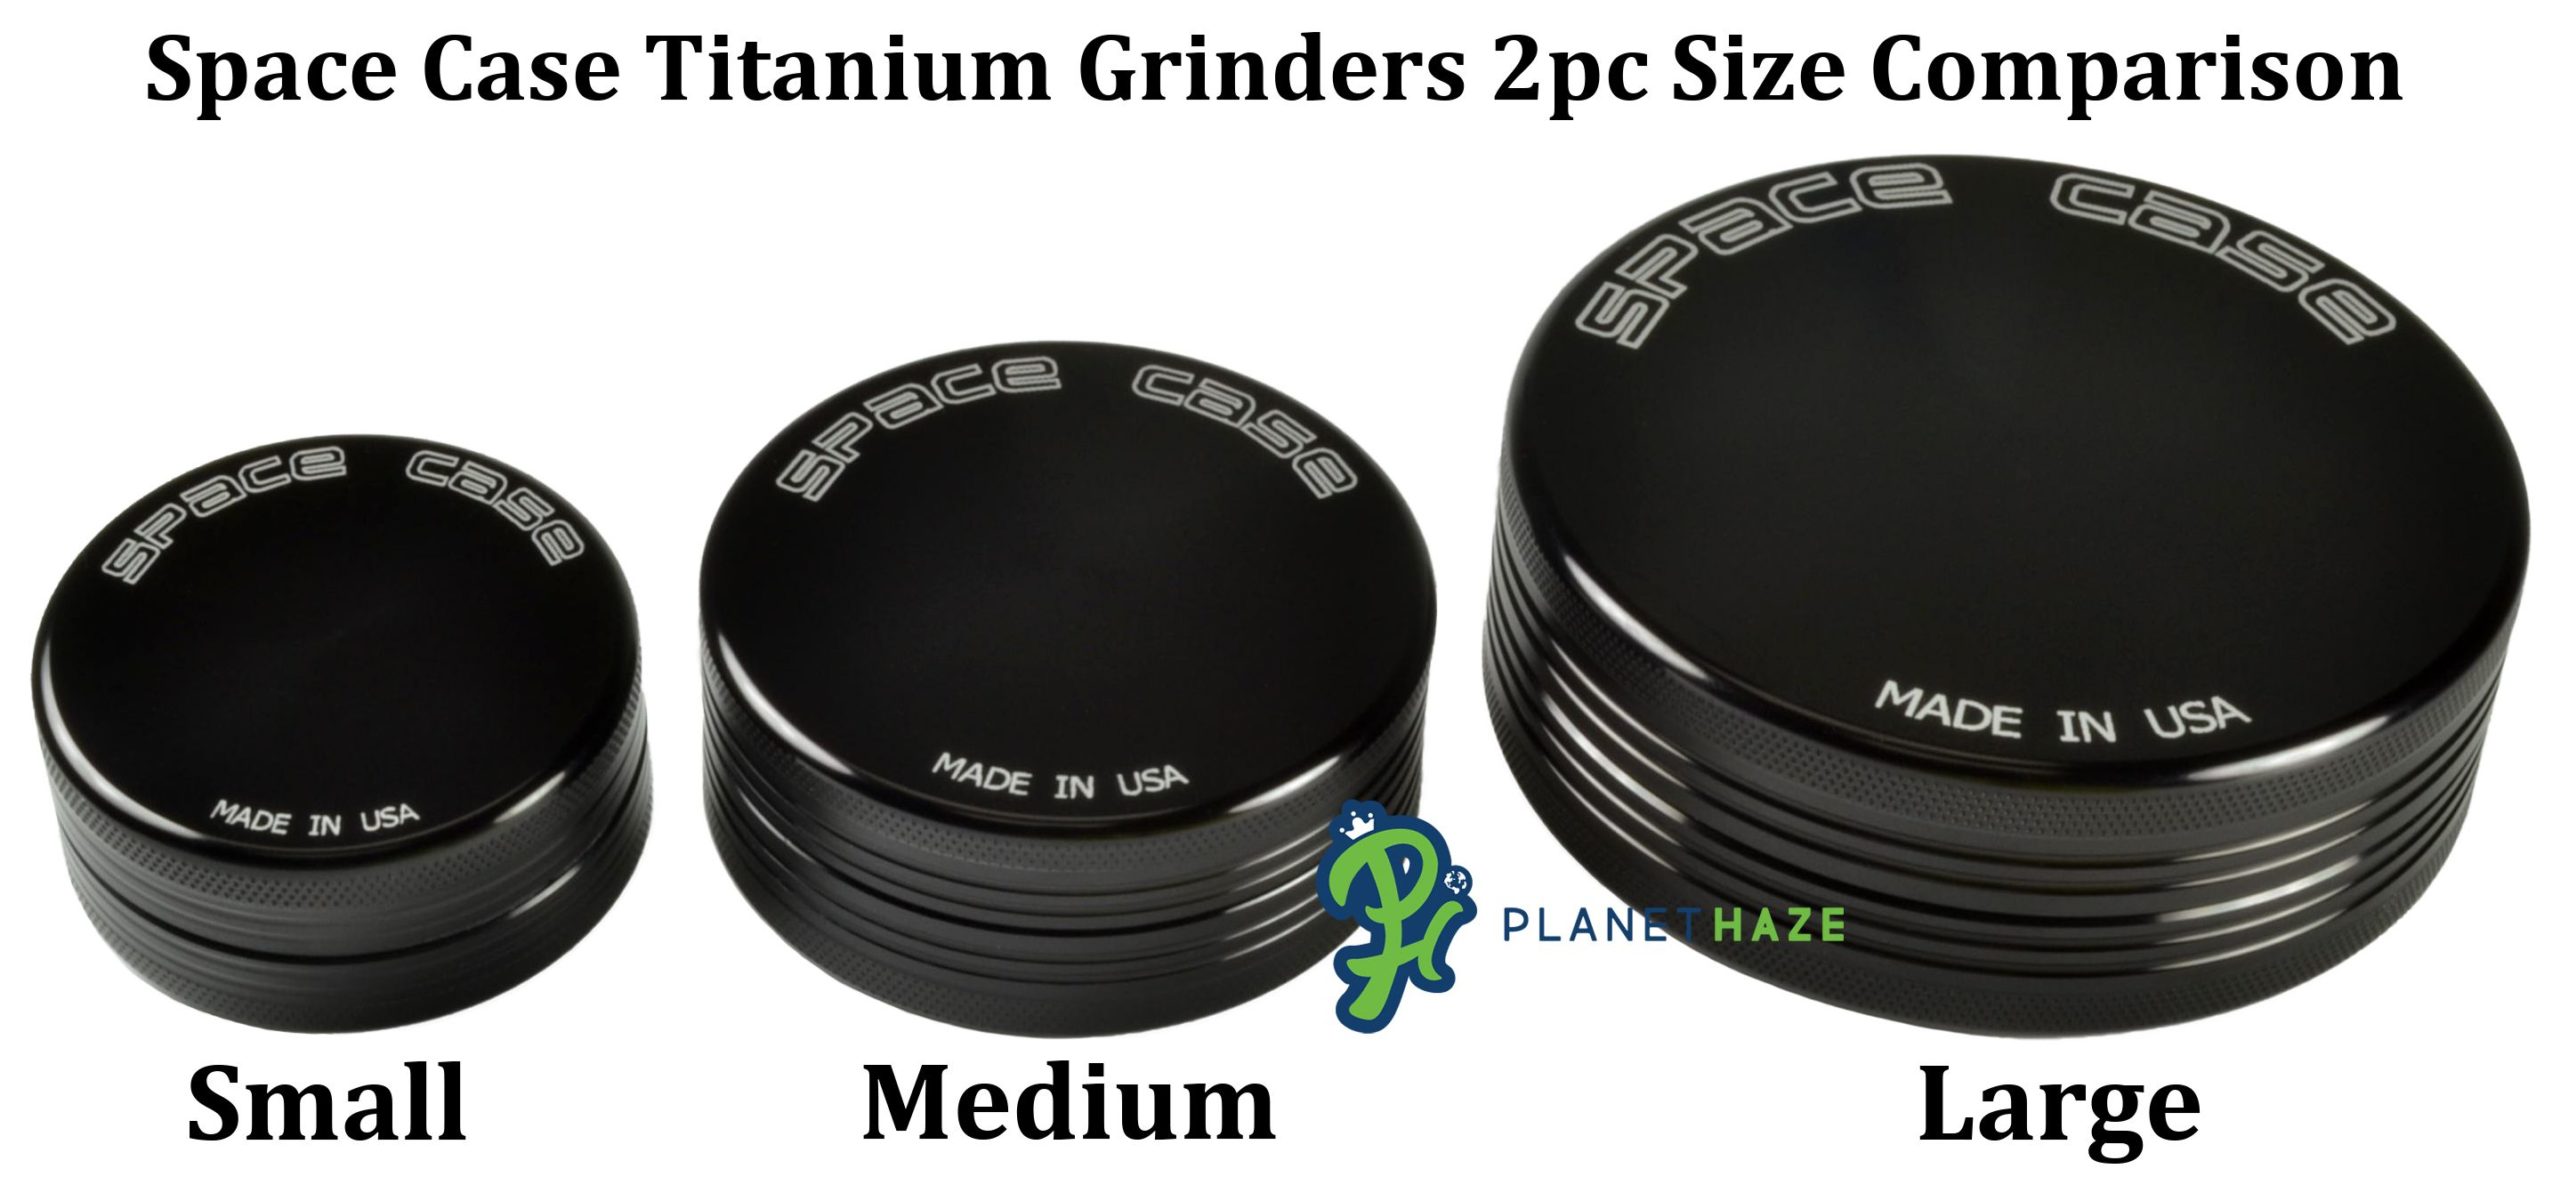 Space Case Titanium 2pc Grinder Size Comparison